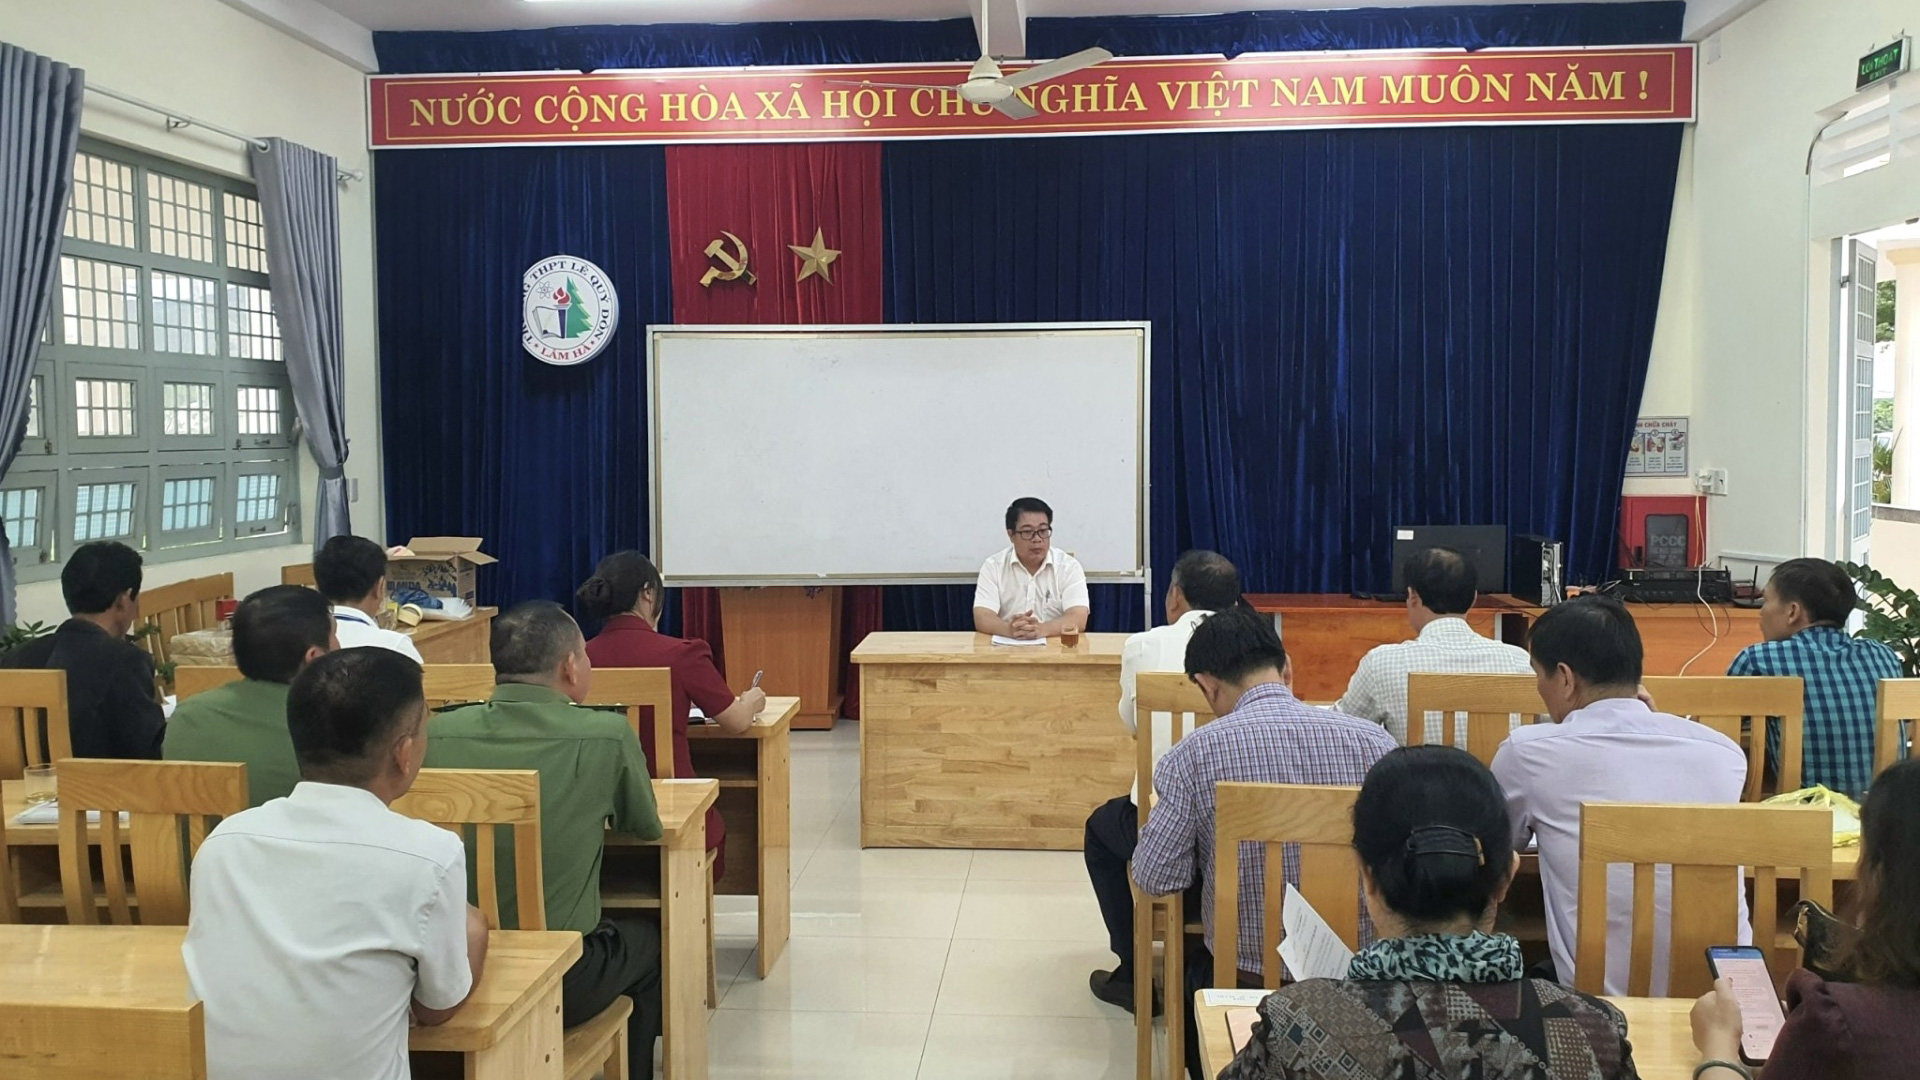 Phó Chủ tịch UBND tỉnh Lâm Đồng Nguyễn Ngọc Phúc kiểm tra tại Trường THPT Lê Quý Đôn, huyện Lâm Hà